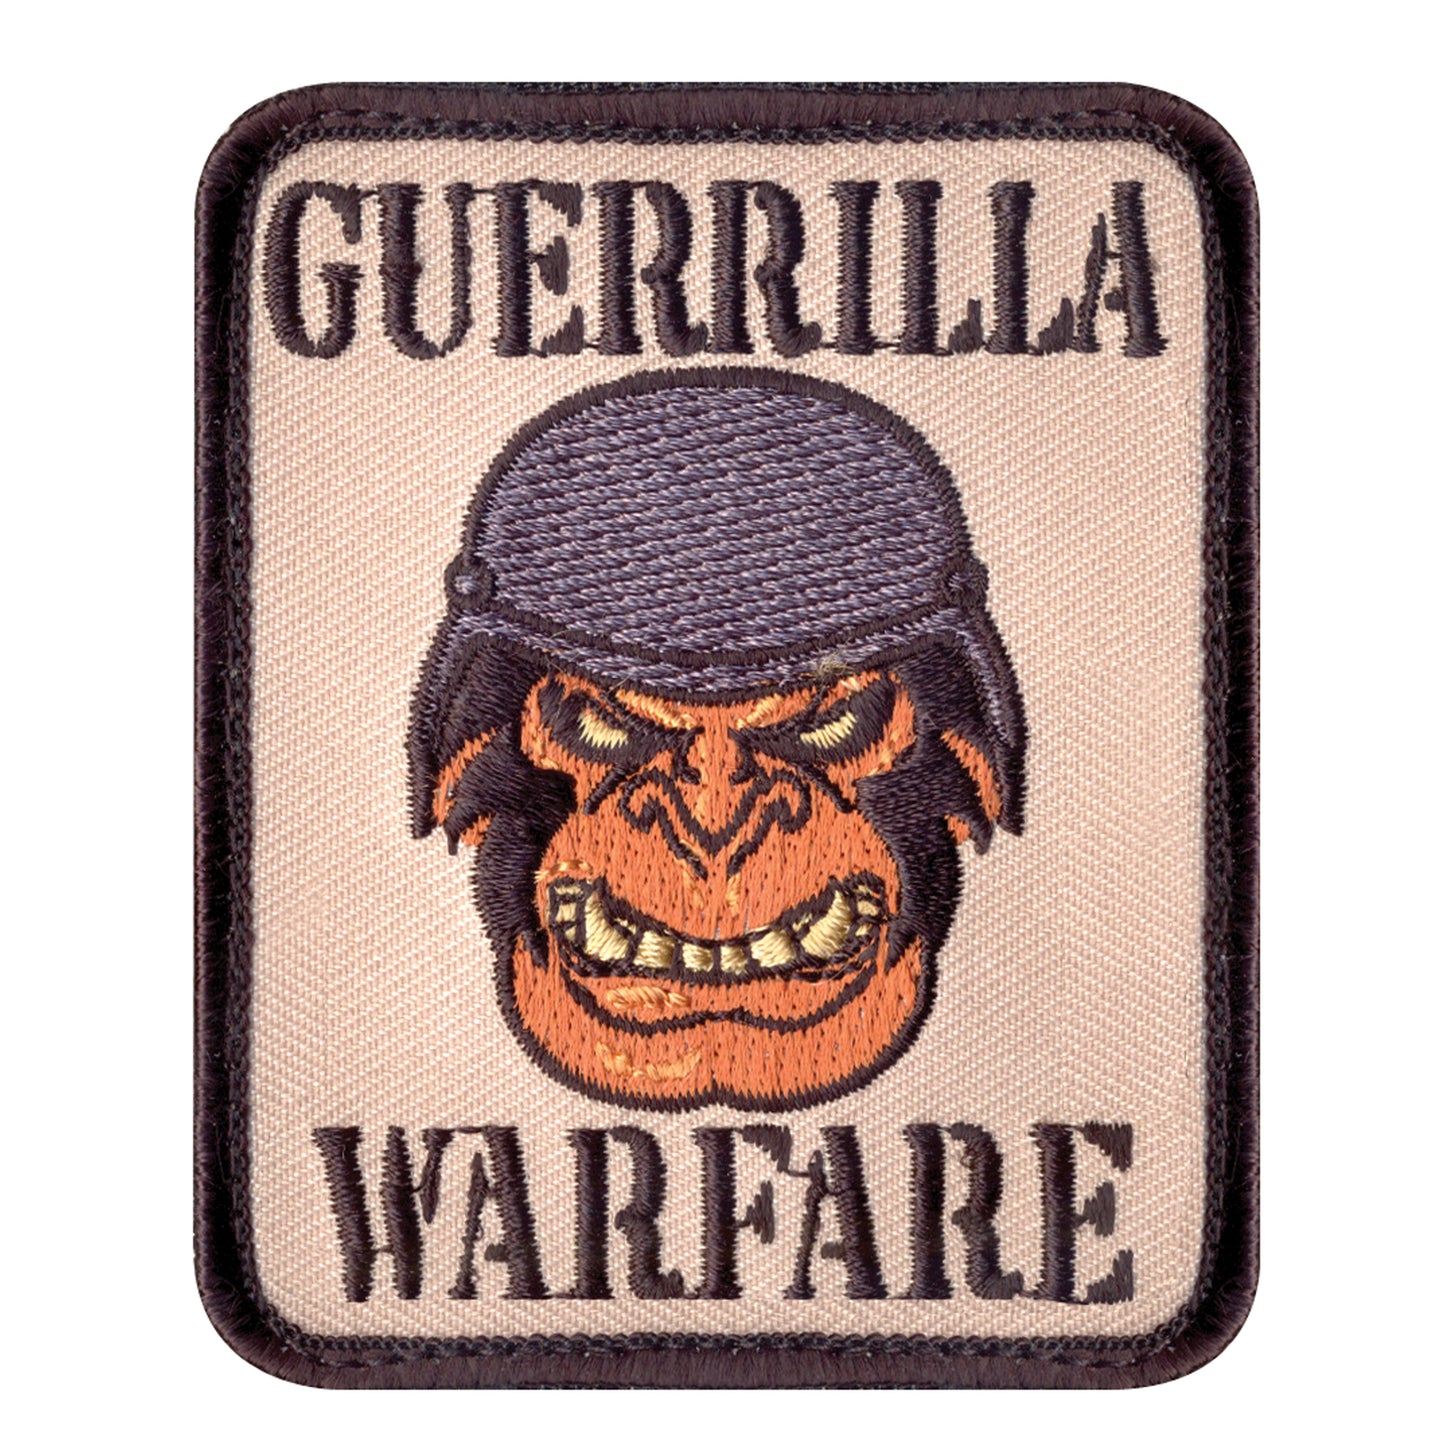 Rothco Guerrilla Warfare Morale Patch